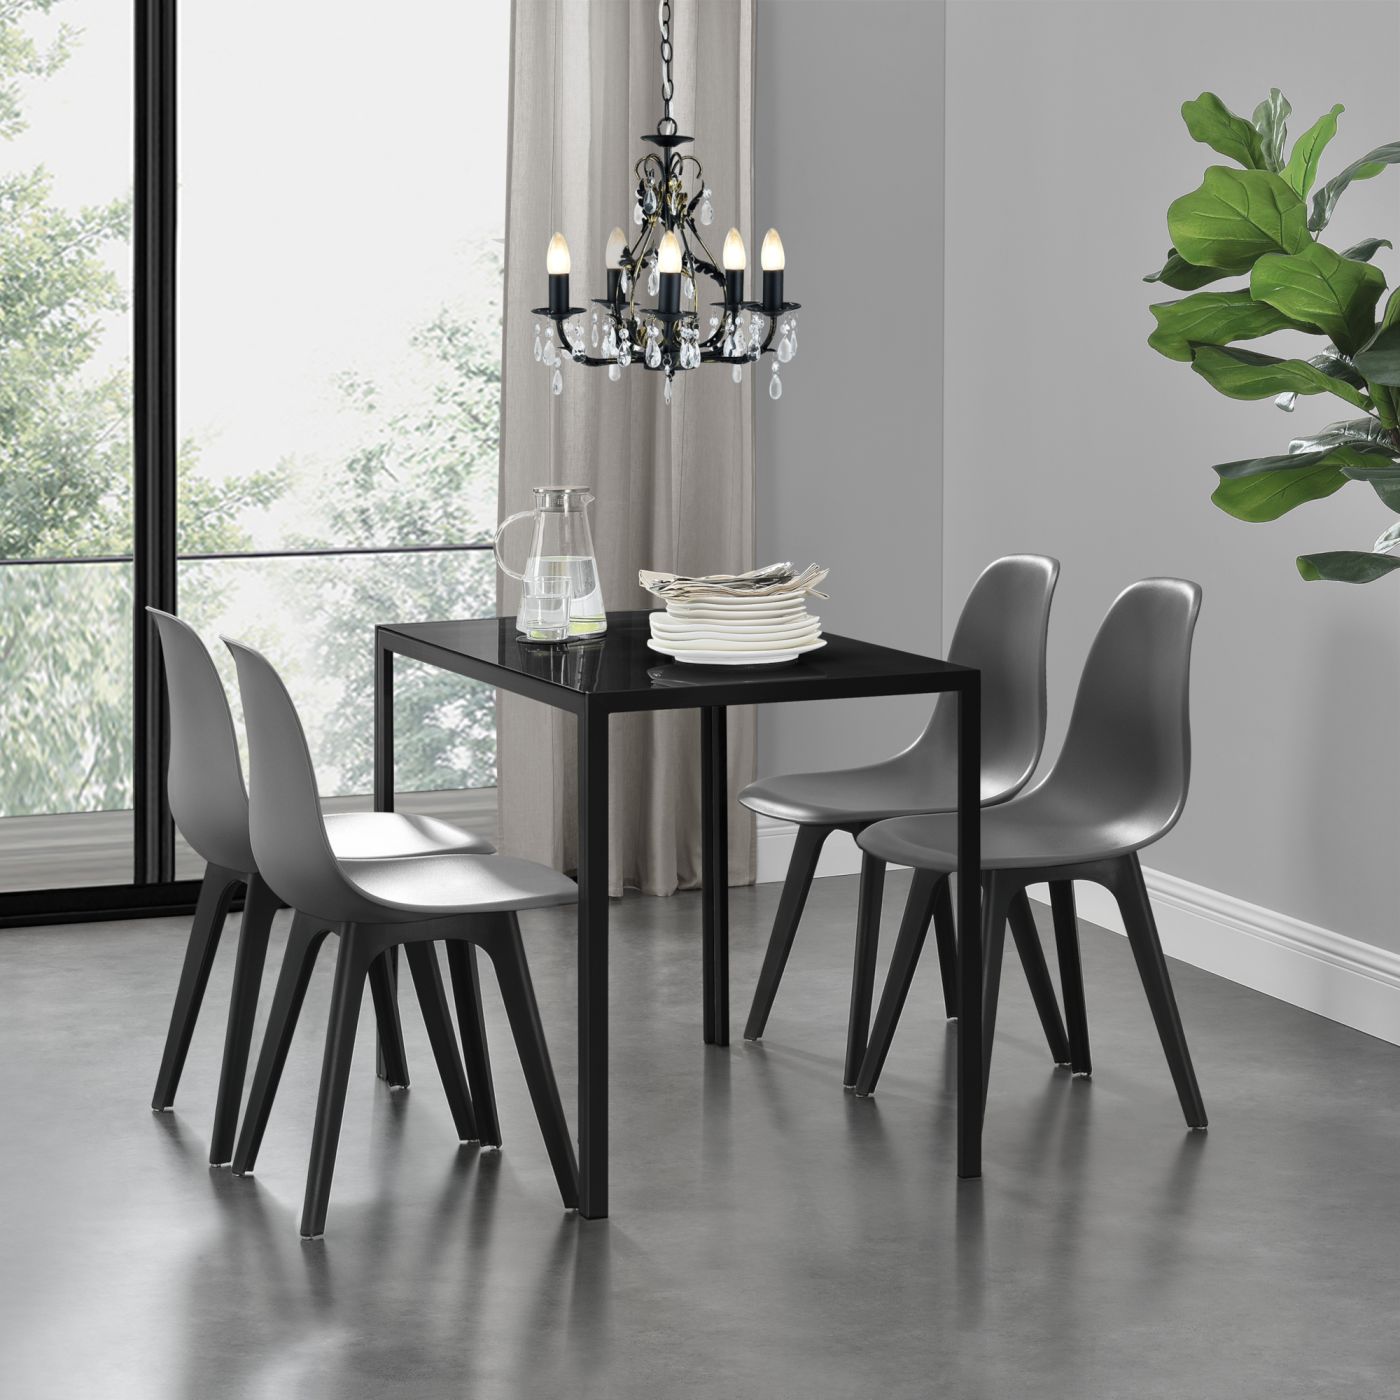 Overeenkomstig vragen Tante Eethoek Delft glazen eettafel met 4 stoelen zwart en grijs | premiumXL